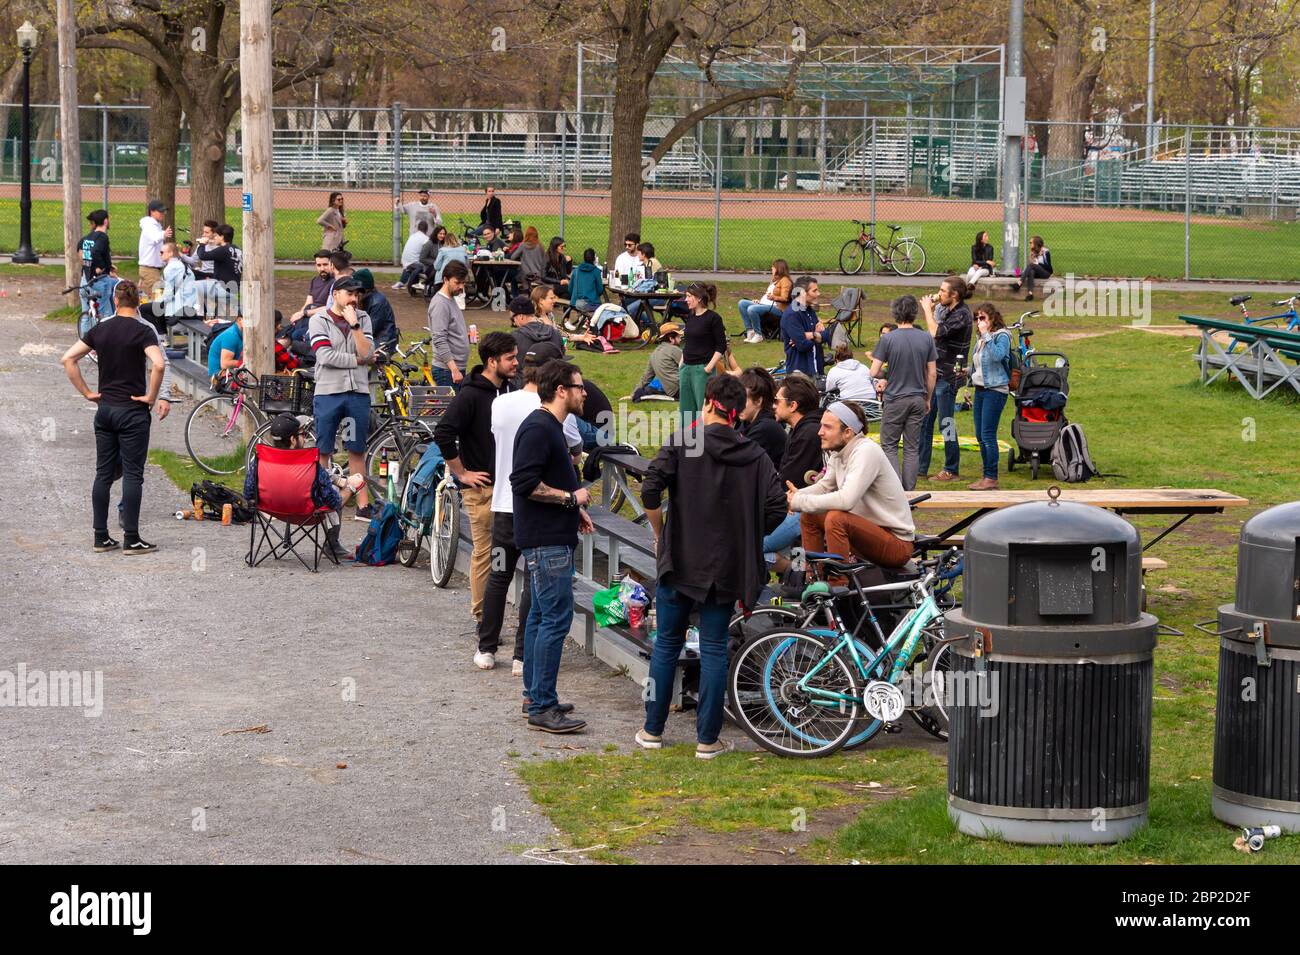 Montréal, CA - 16 mai 2020 : rassemblement de personnes dans le parc Lafontaine pendant une pandémie de coronavirus Banque D'Images